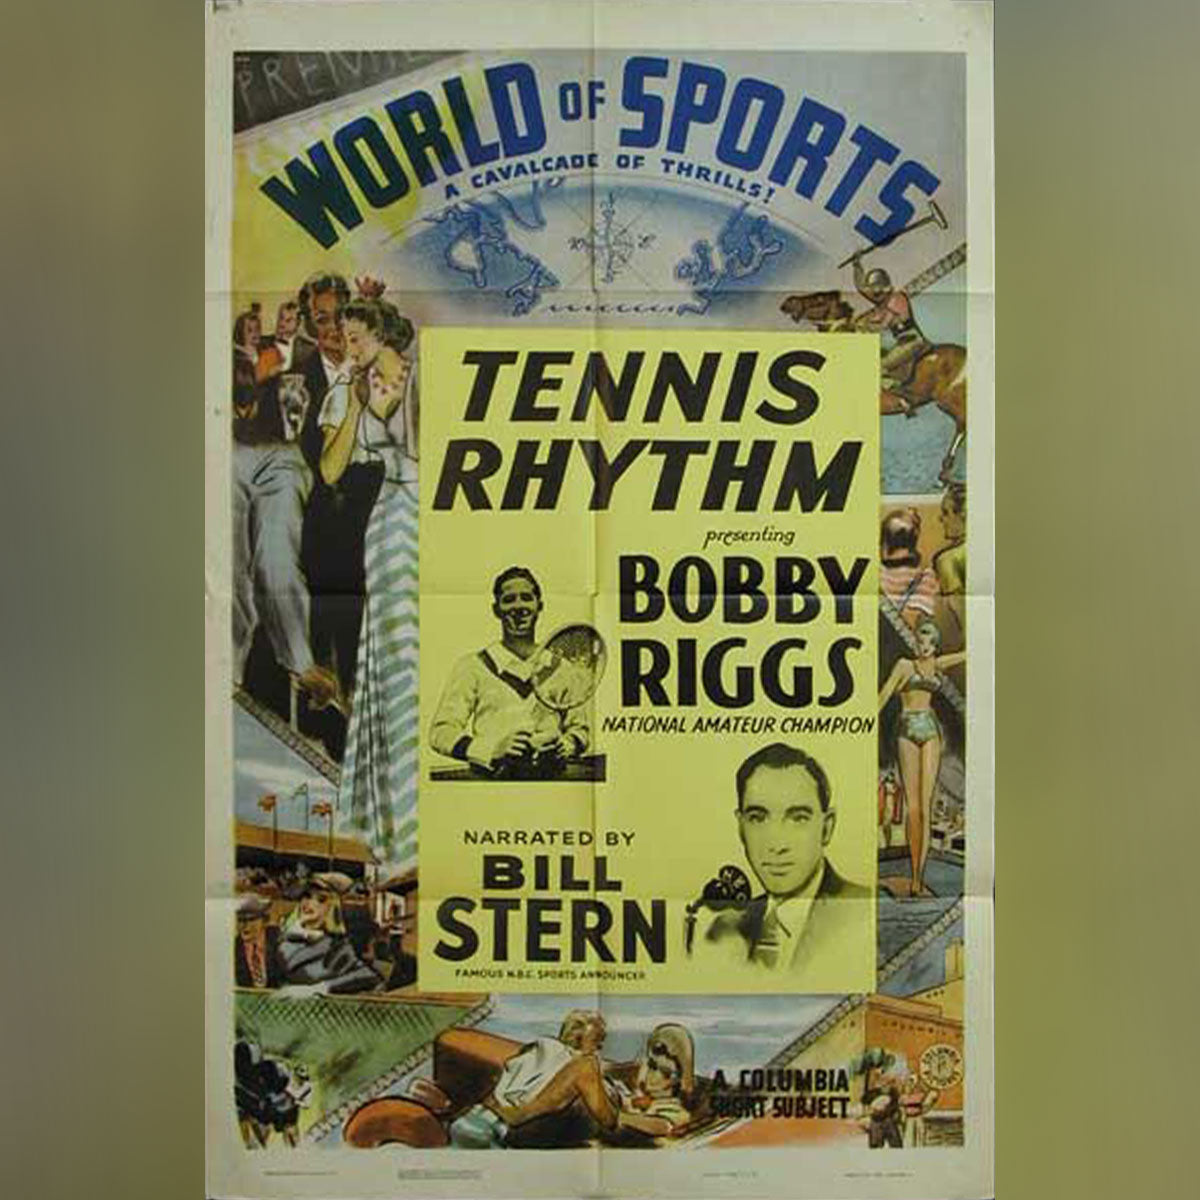 World of Sports - Tennis Rhythm (1949)